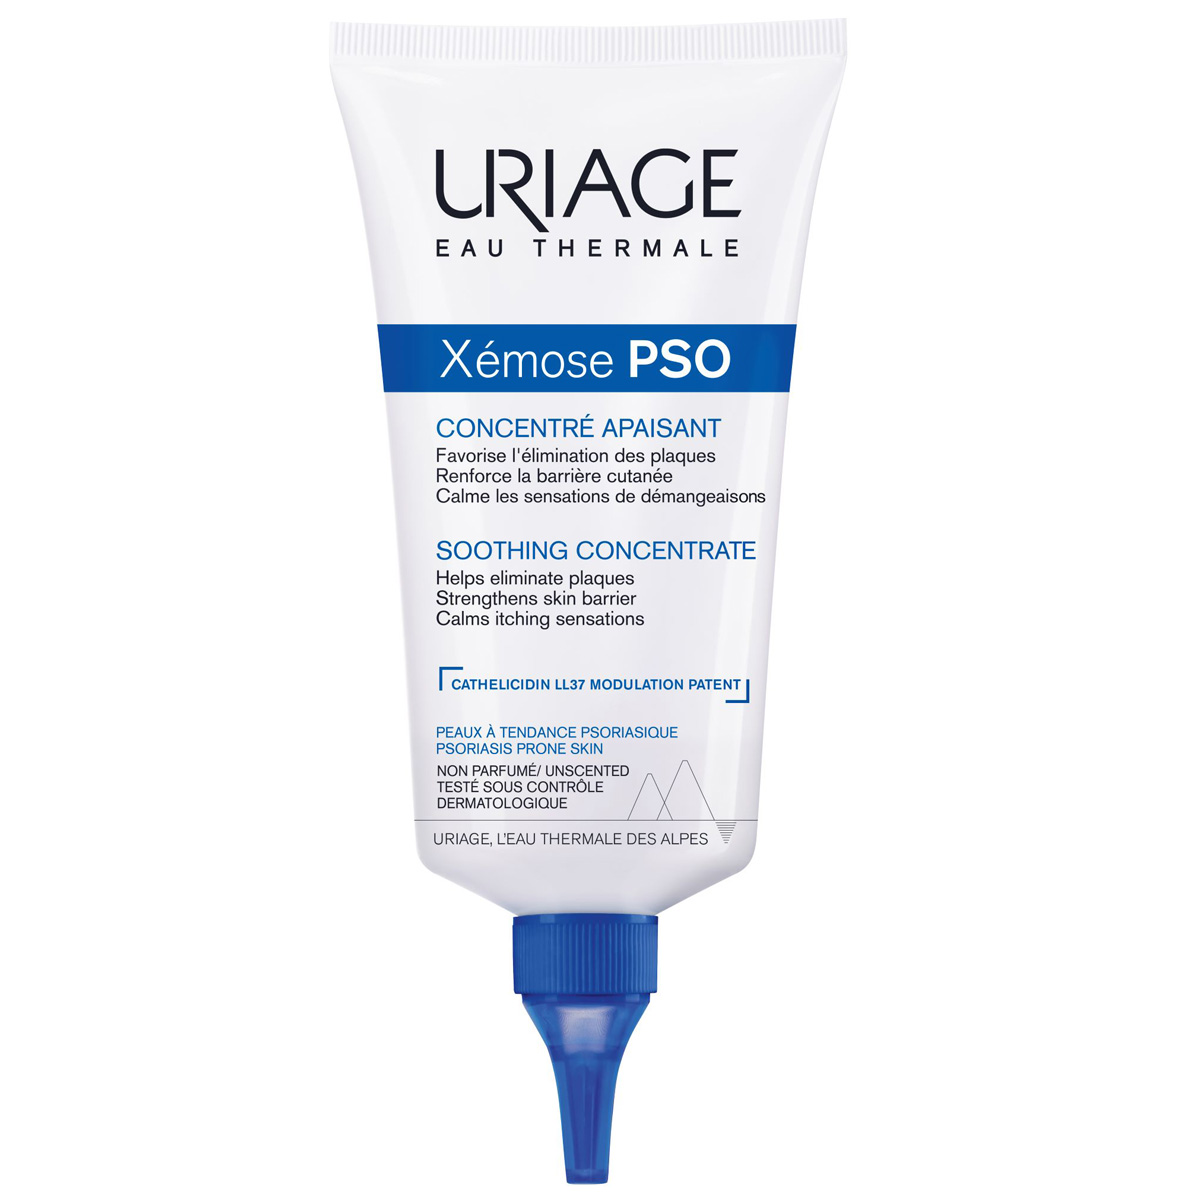 Uriage Успокаивающий крем-концентрат PSO, 150 мл (Uriage, Xe